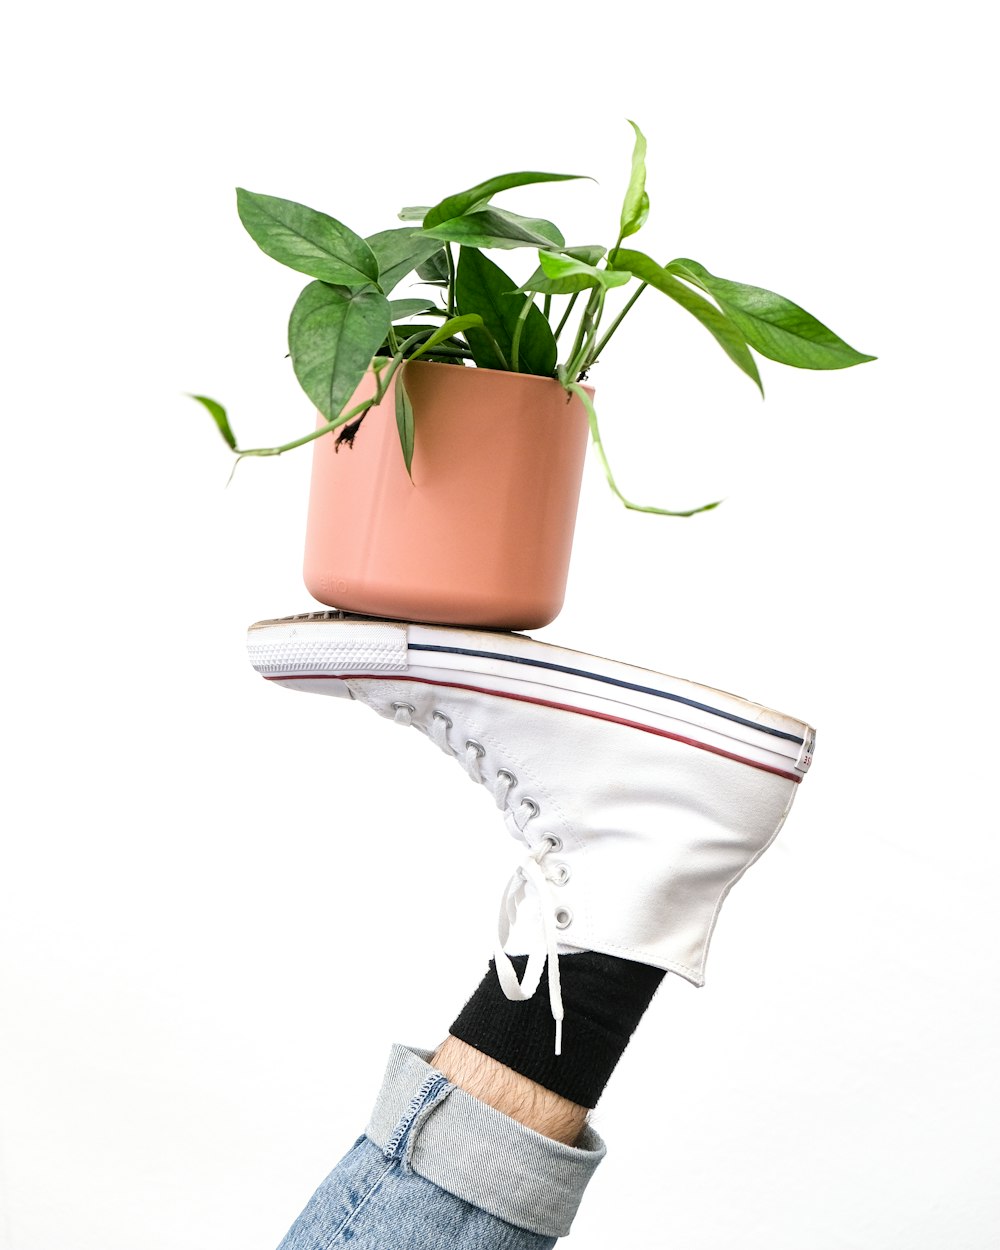 los pies de una persona con una planta en maceta en los pies